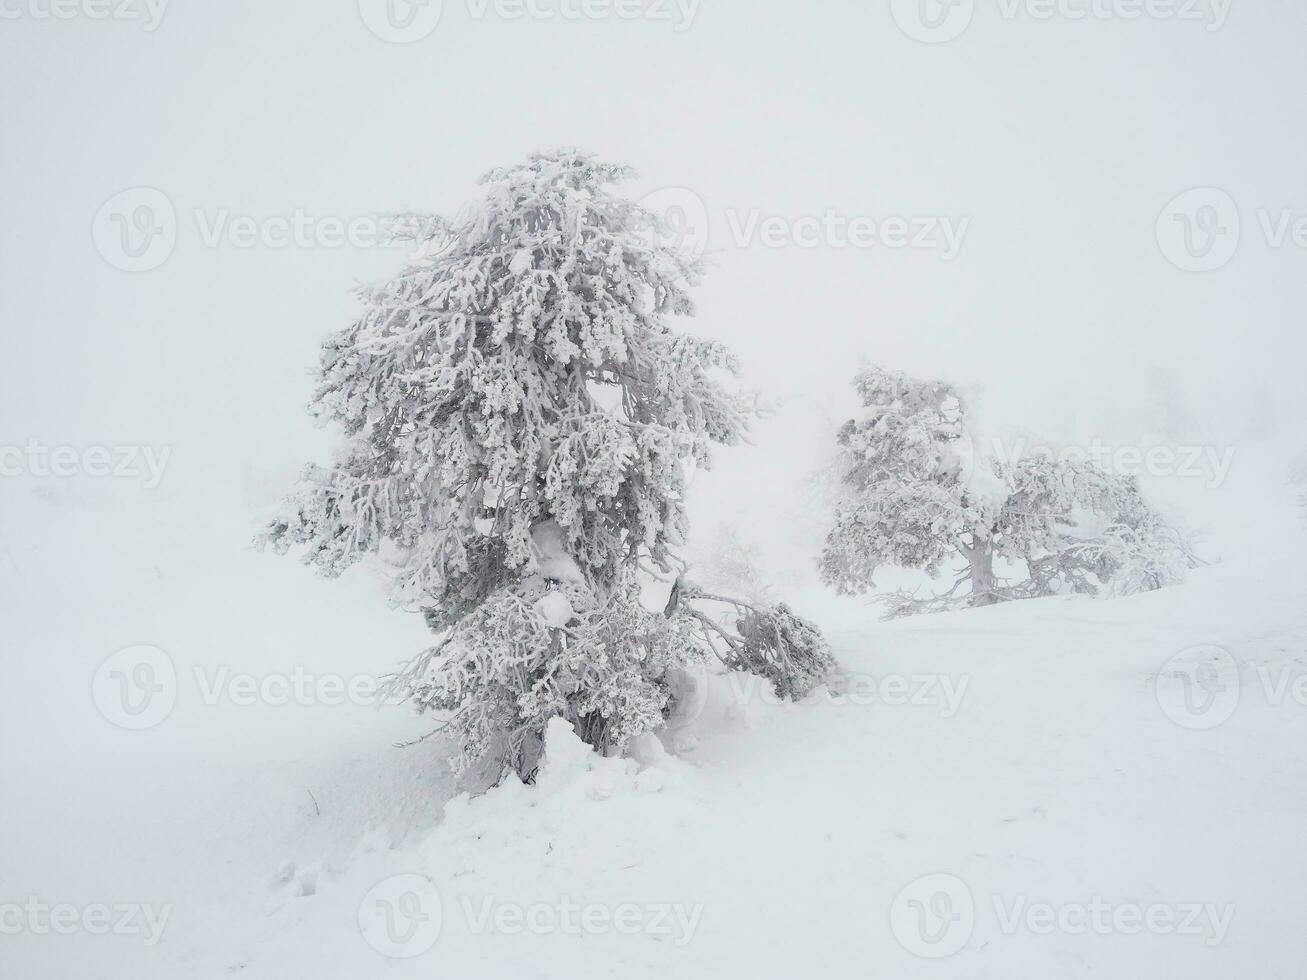 mágico extraño siluetas de arboles son borracho con nieve. ártico duro naturaleza. un místico hada cuento de el invierno brumoso bosque. nieve cubierto Navidad abeto arboles en ladera de la montaña foto